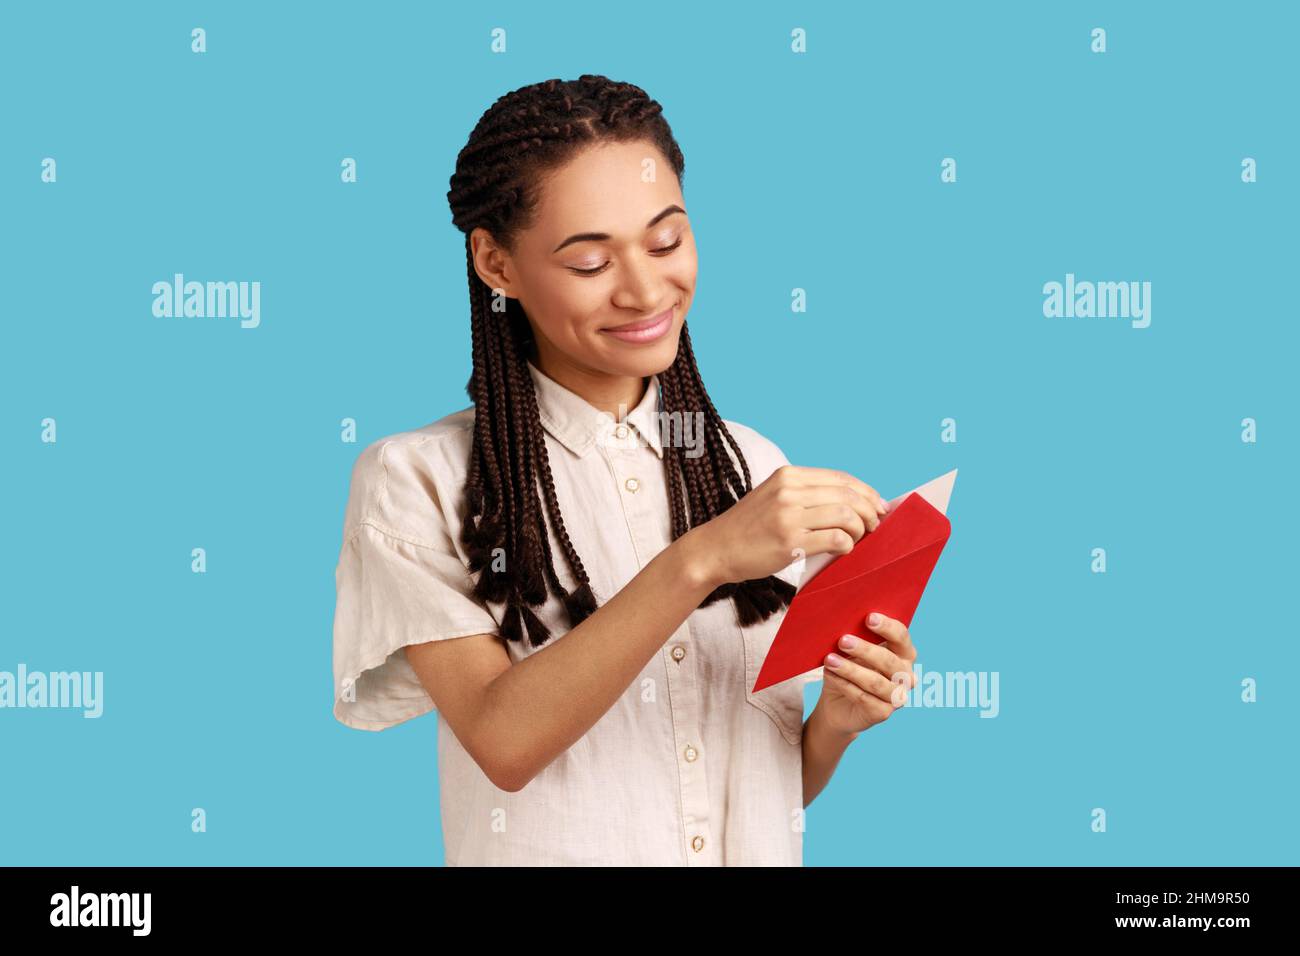 Ritratto di donna sorridente con predellini neri in piedi busta rossa aperta con congratulazioni, lettura lettera romantica, indossare camicia bianca. Studio interno girato isolato su sfondo blu. Foto Stock